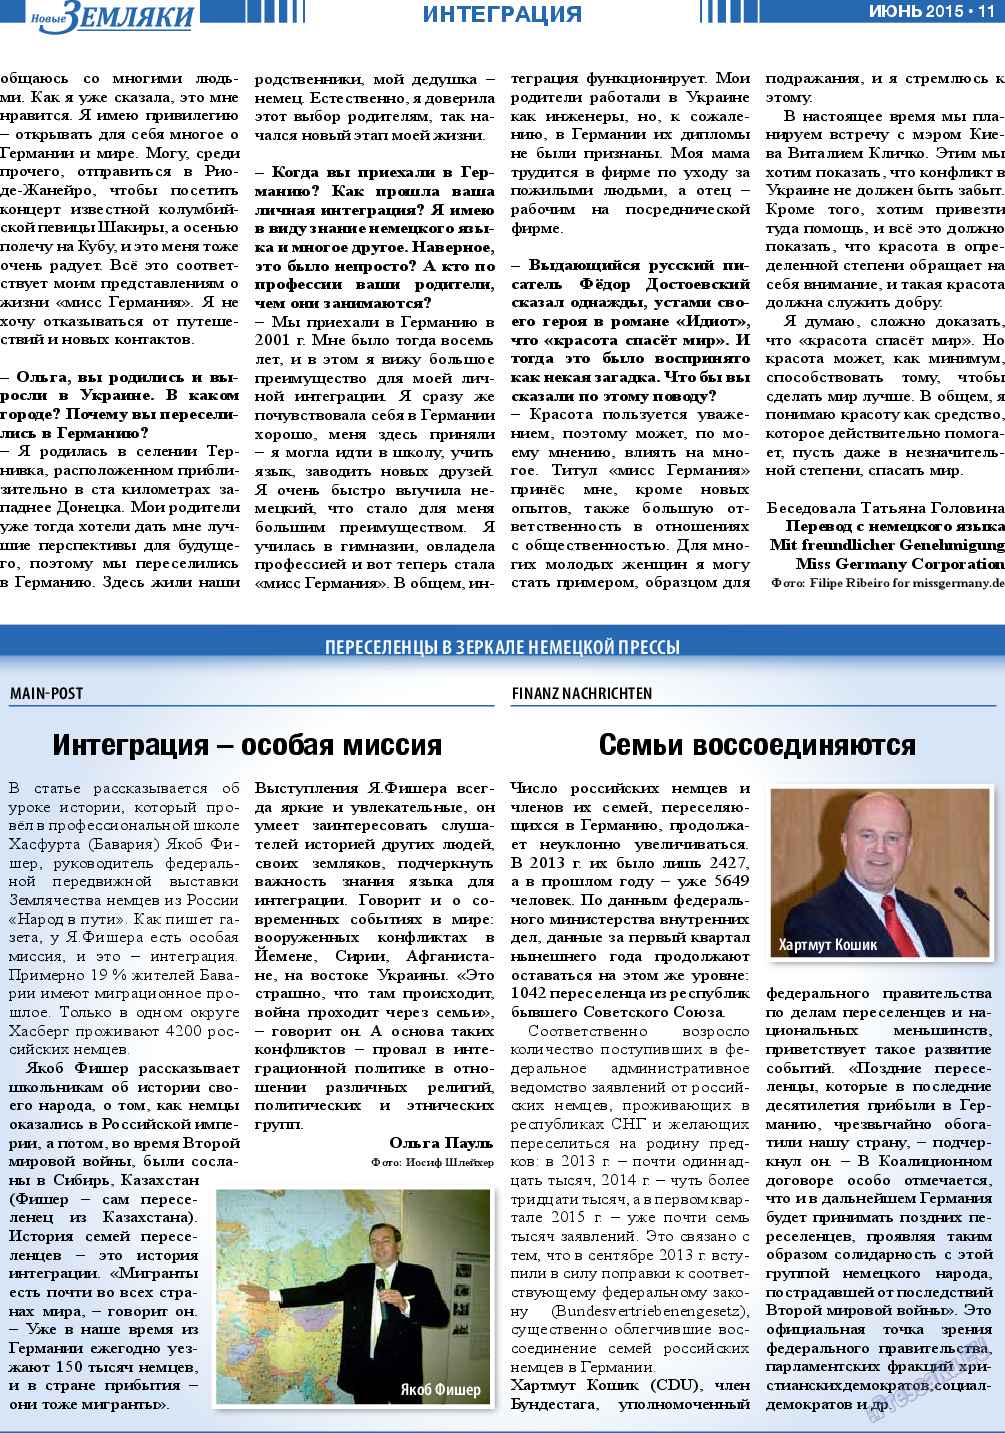 Новые Земляки, газета. 2015 №6 стр.11